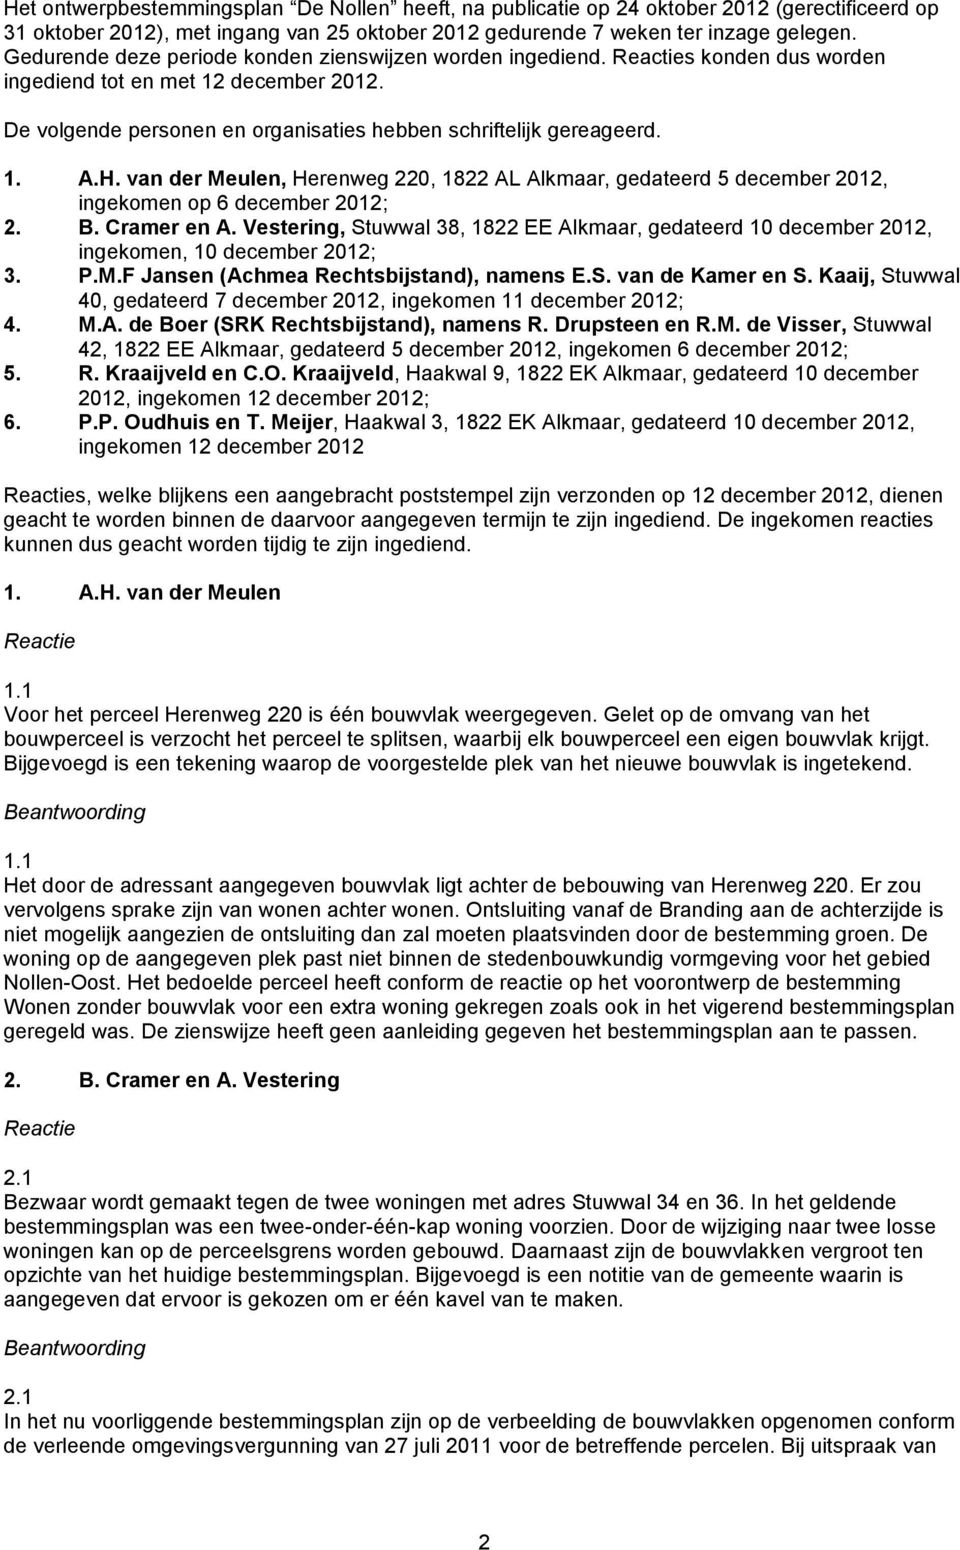 van der Meulen, Herenweg 220, 1822 AL Alkmaar, gedateerd 5 december 2012, ingekomen op 6 december 2012; 2. B. Cramer en A.